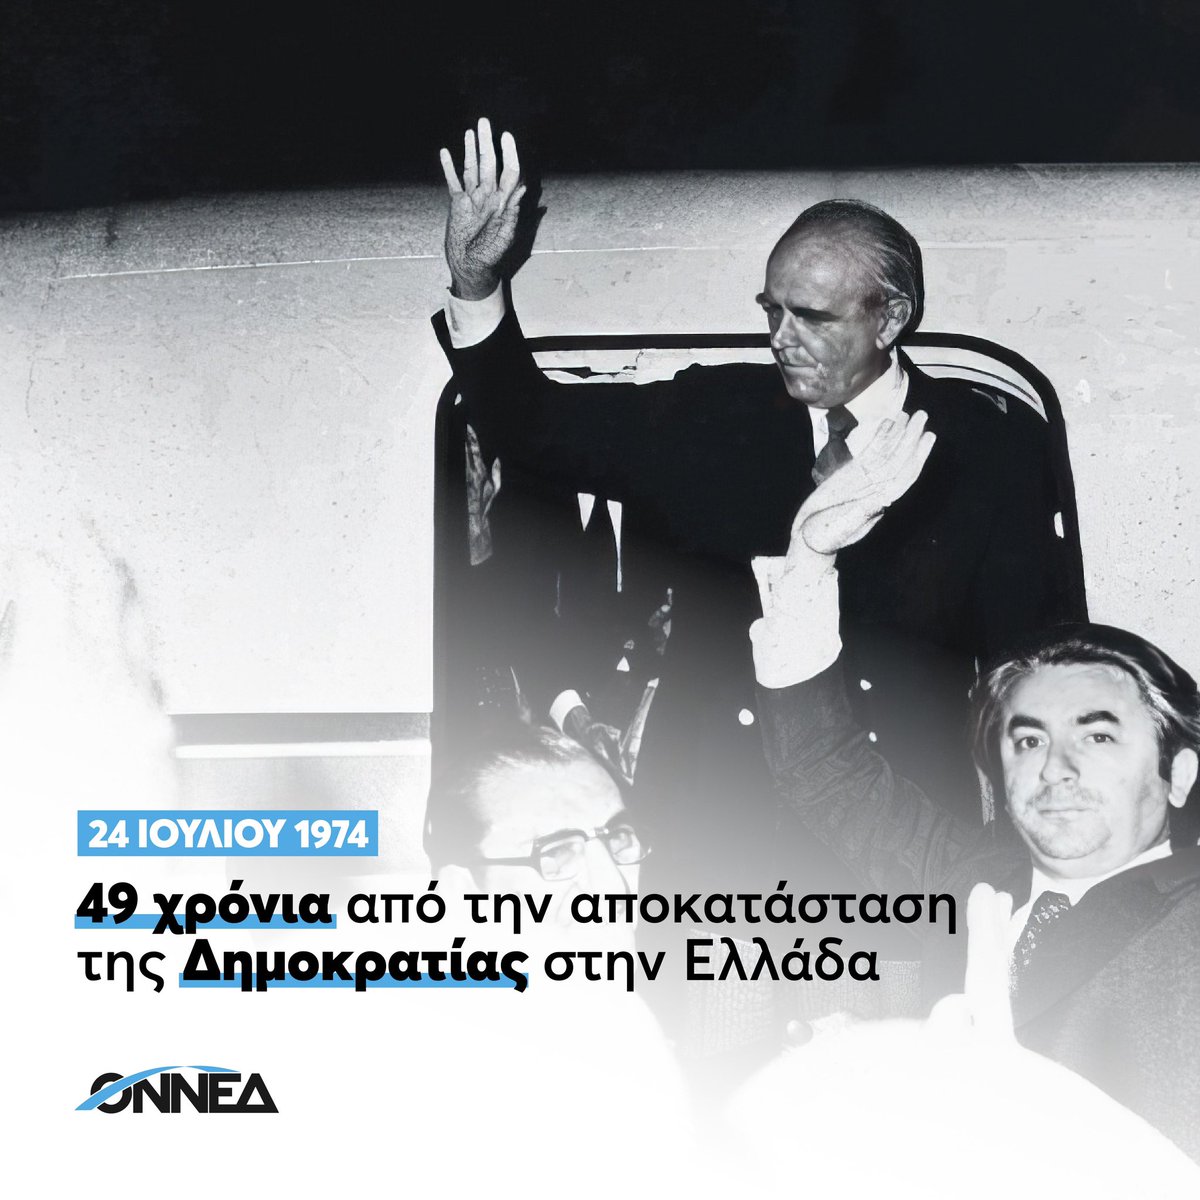 49 χρόνια από την Αποκατάσταση της Δημοκρατίας στην Ελλάδα, η ιστορική ευθύνη για το μέλλον βρίσκεται στη δική μας γενιά. Είναι στο χέρι μας να διαθέσουμε όλες μας τις δυνάμεις για να οικοδομήσουμε μια Ελλάδα ισχυρή και υπερήφανη. Την Ελλάδα που αξίζουμε.